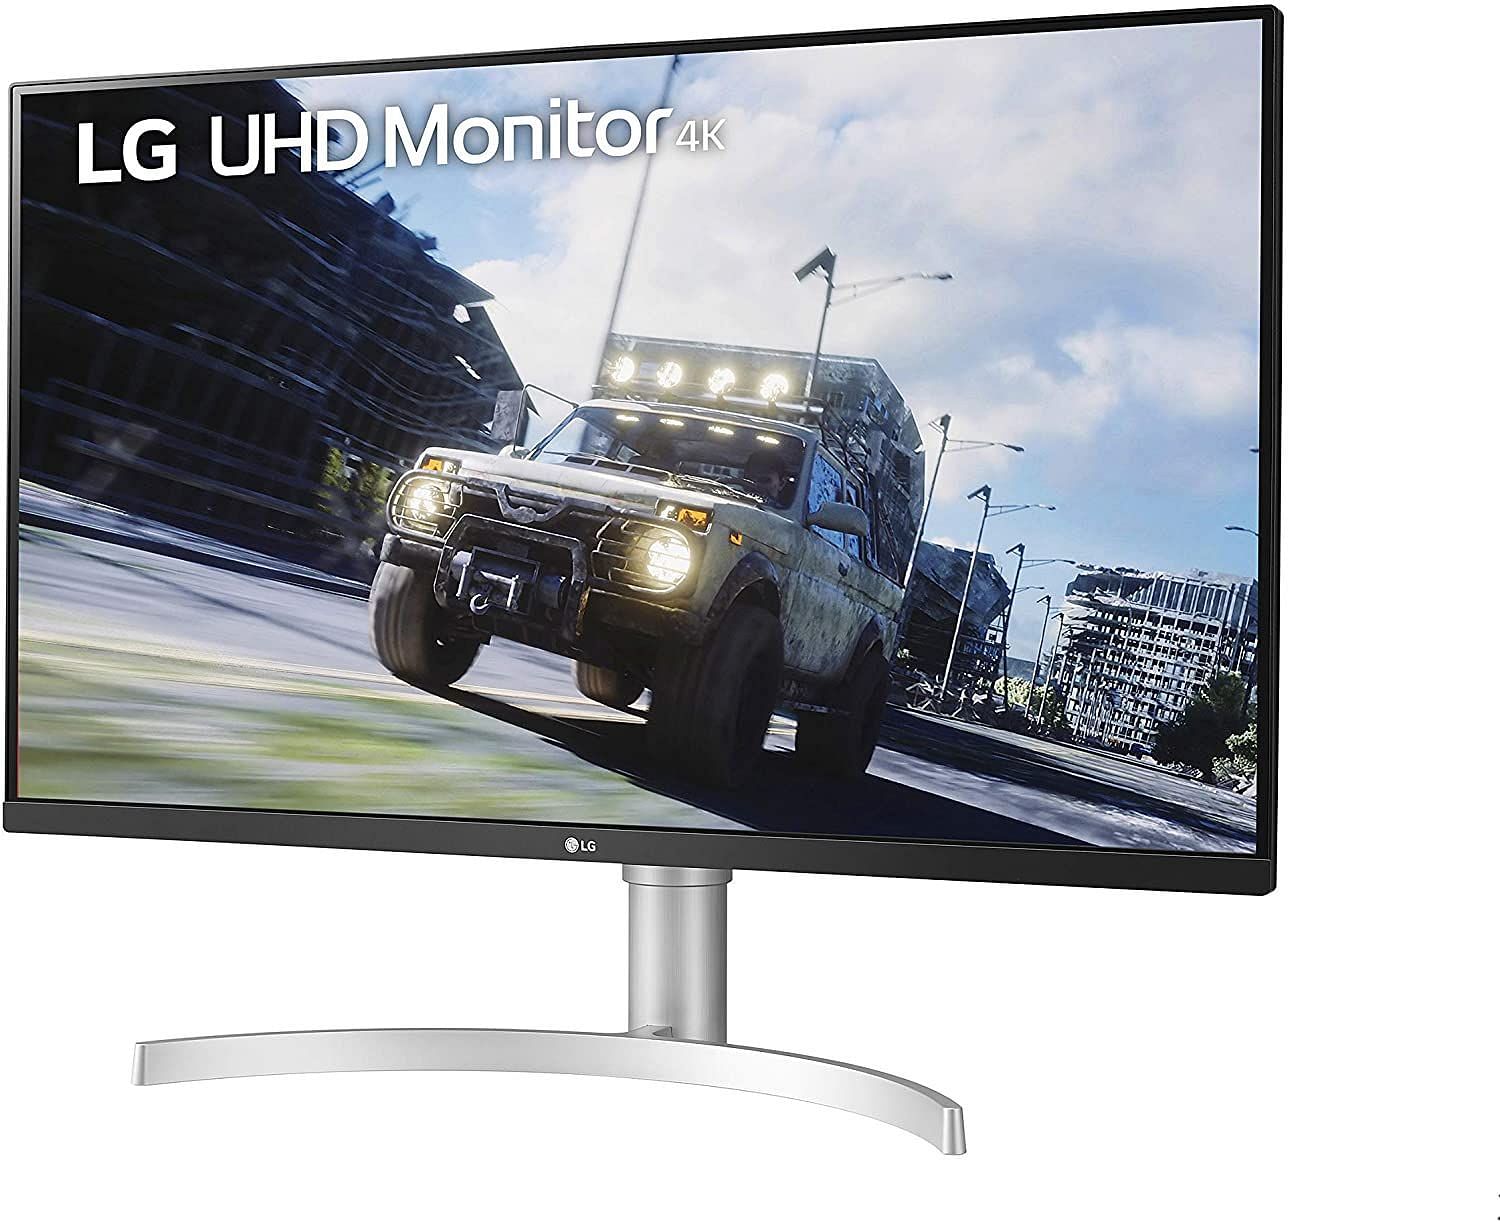 The LG 32UN550-W Monitor 32 inch (Image via Amazon)